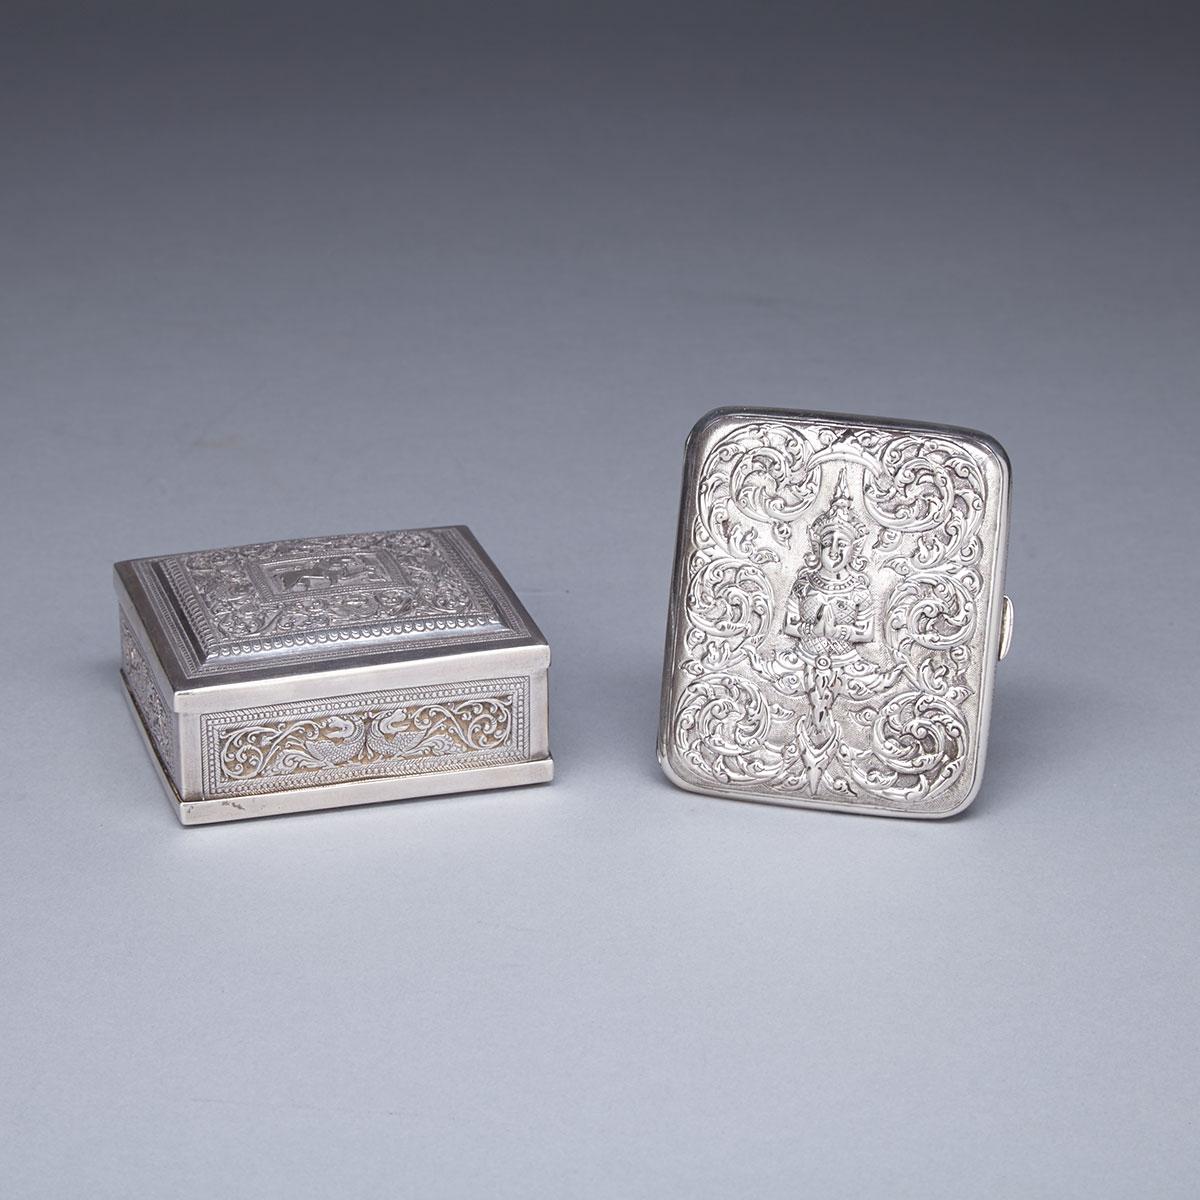 Two Silver Boxes, India, Circa 1900